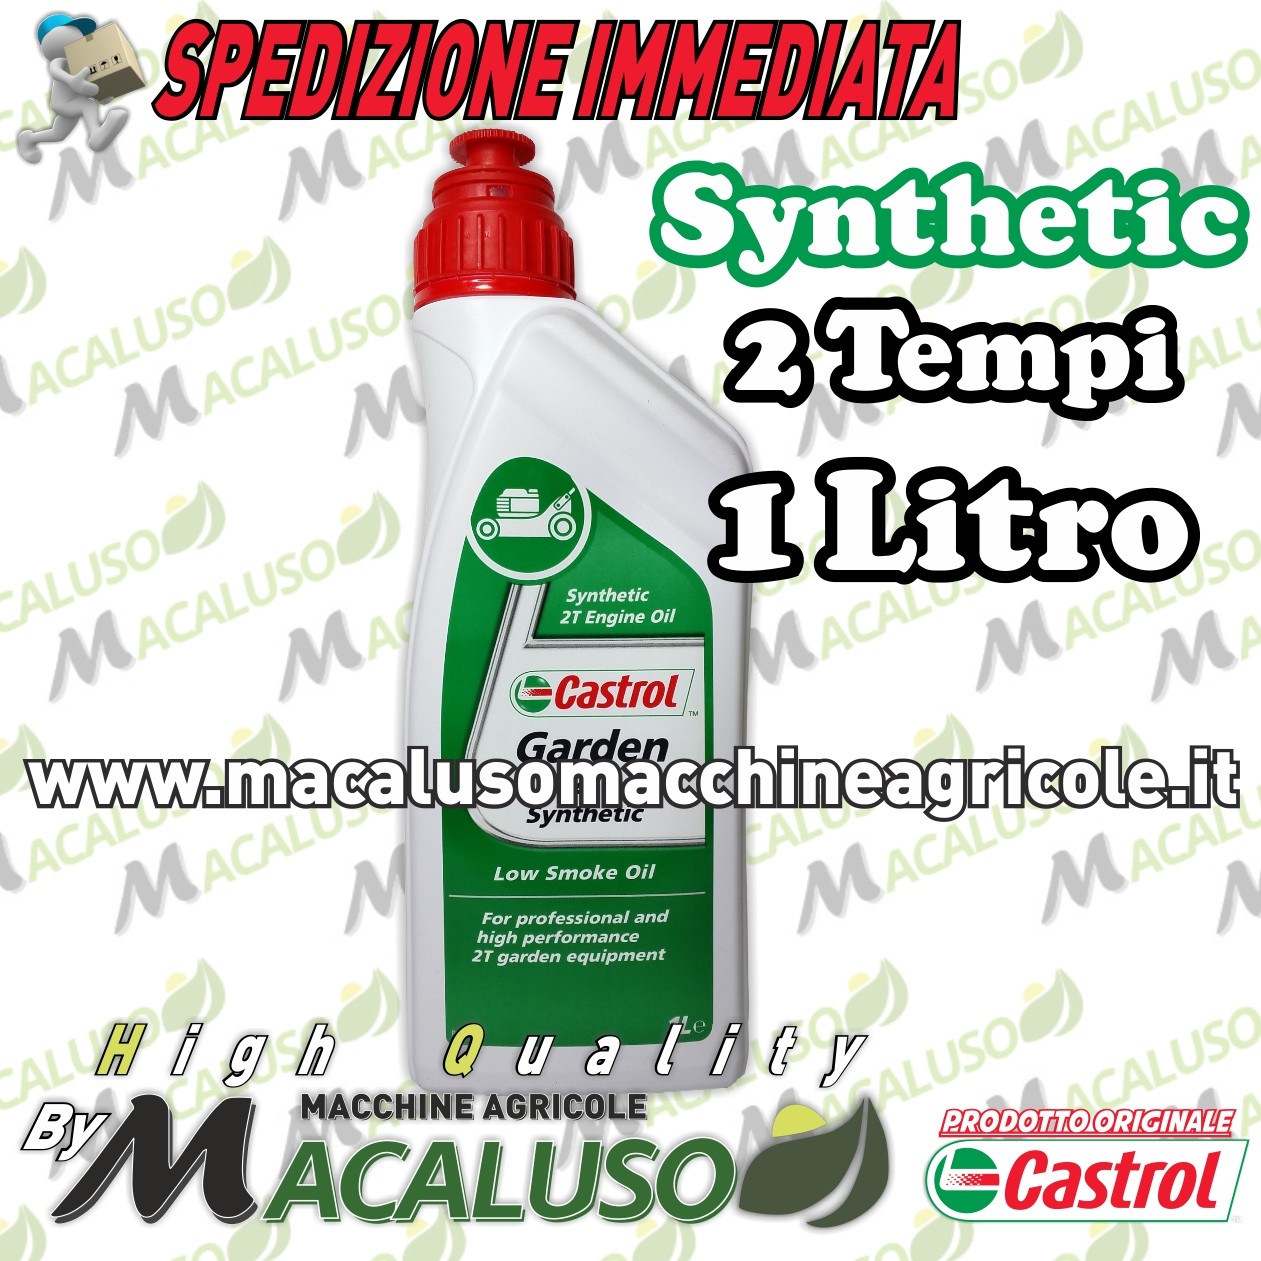 Olio miscela Castrol Garden 2T Synthetic sintetico 1 LT 2 tempi motosega  decespugliatore - Macaluso Macchine Agricole